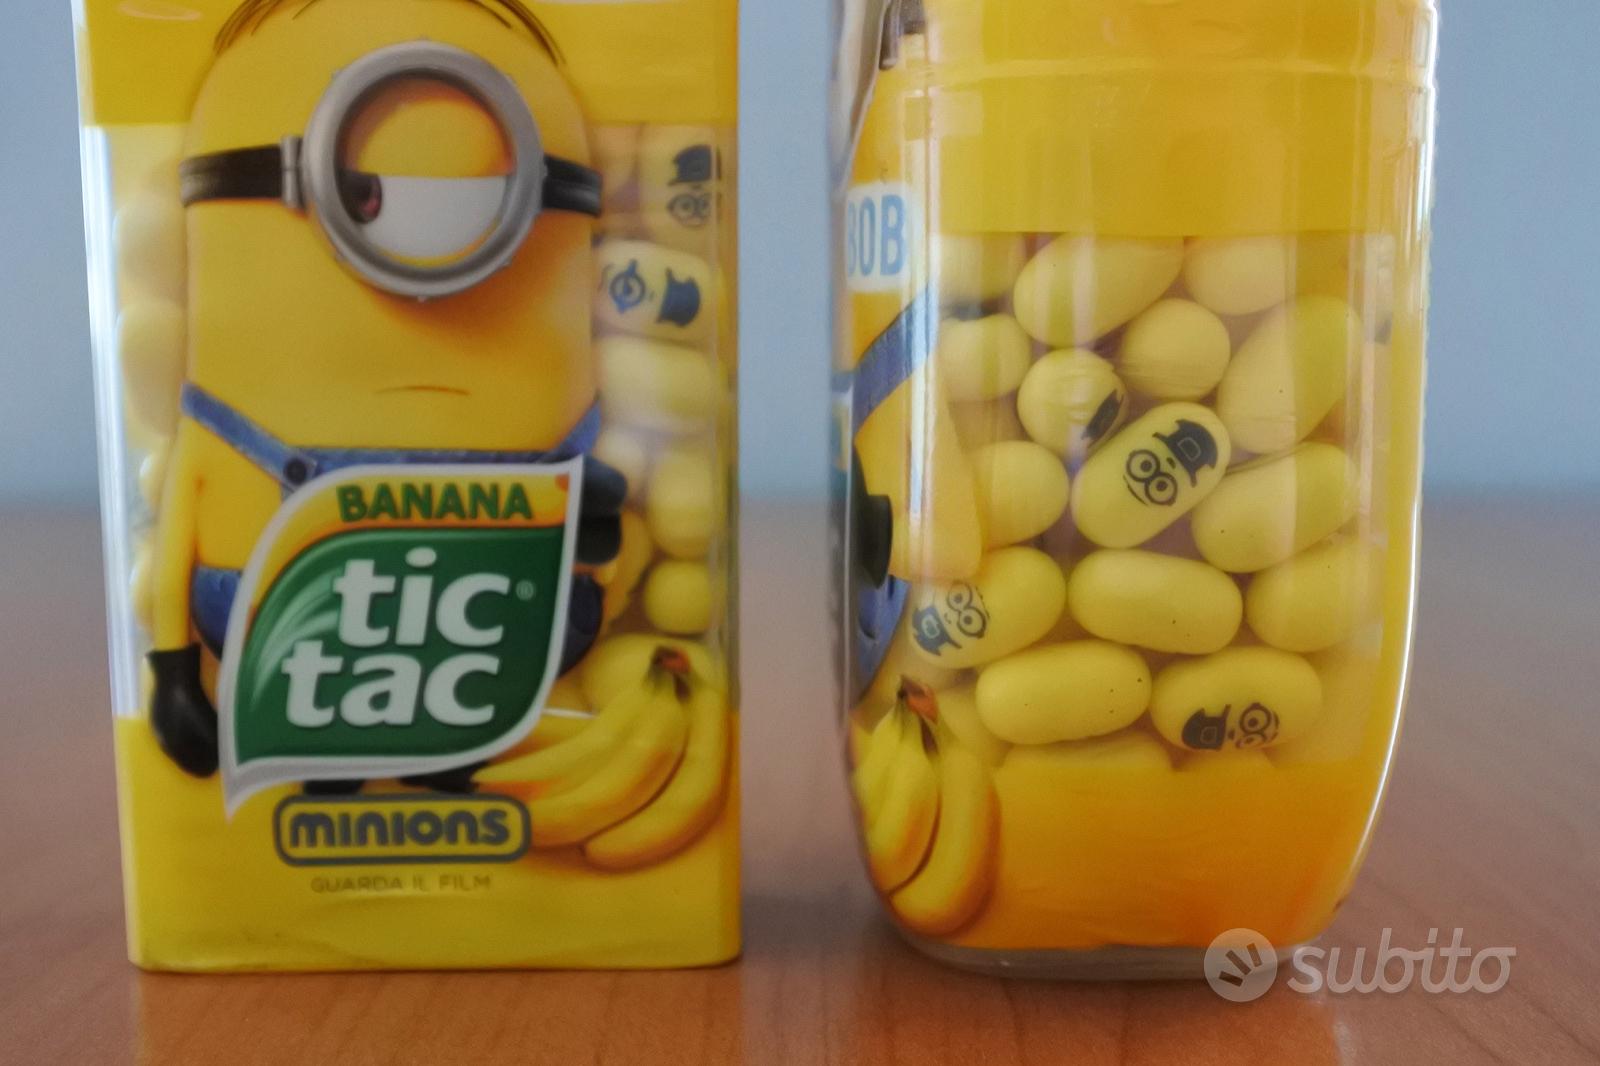 Tic Tac Minions Stuart e Bob alla banana - Collezionismo In vendita a Milano